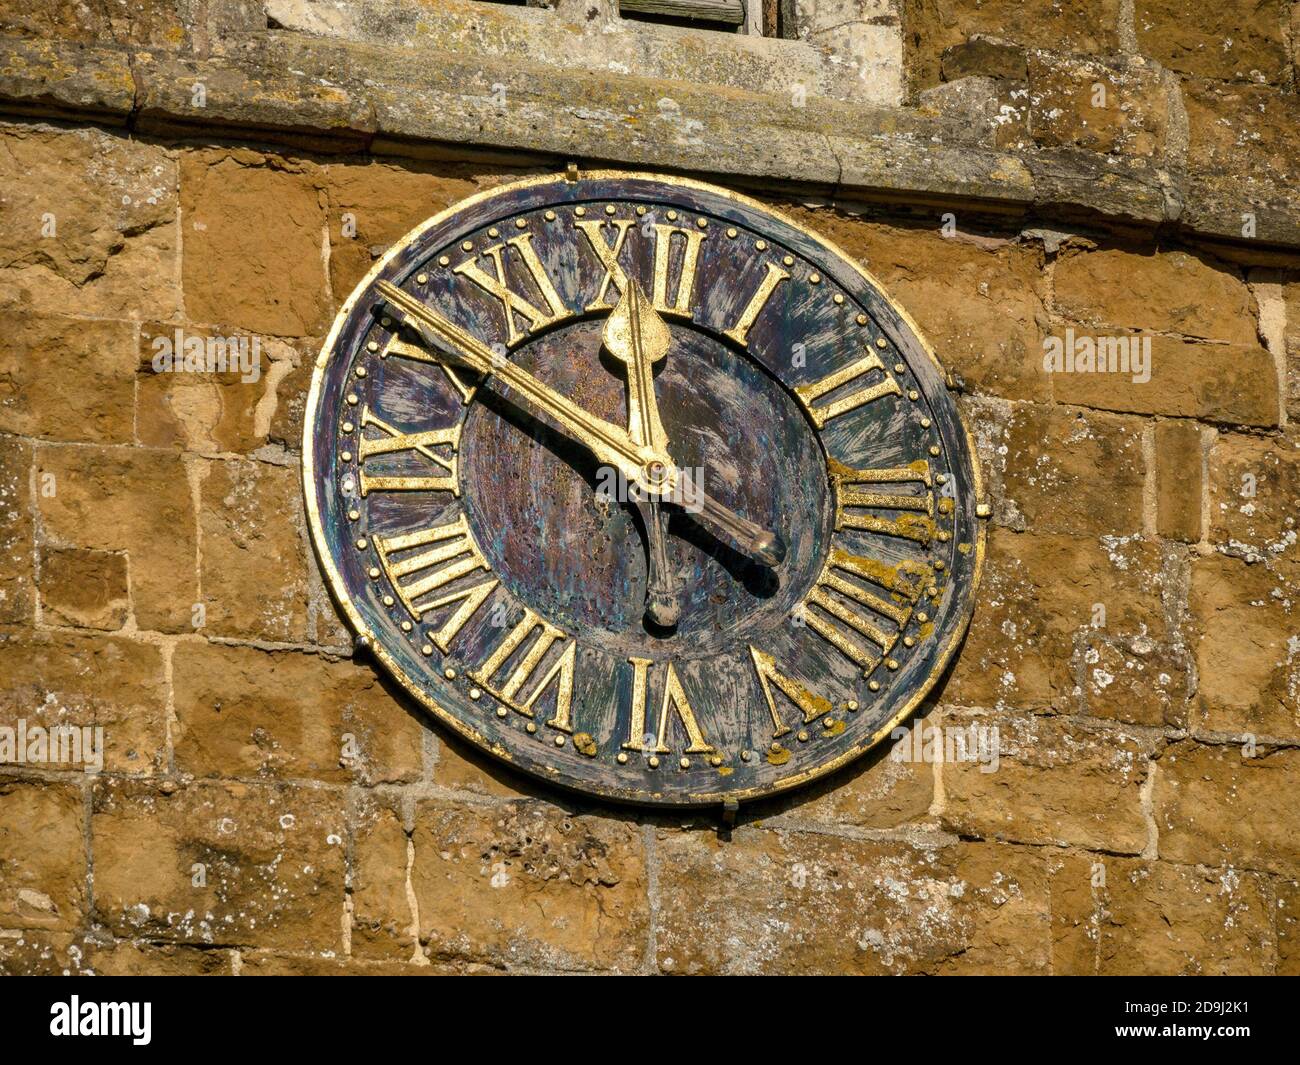 Horloge de l'église, église Saint-Pierre dans le village de Knossington, Leicestershire, Angleterre, Royaume-Uni Banque D'Images